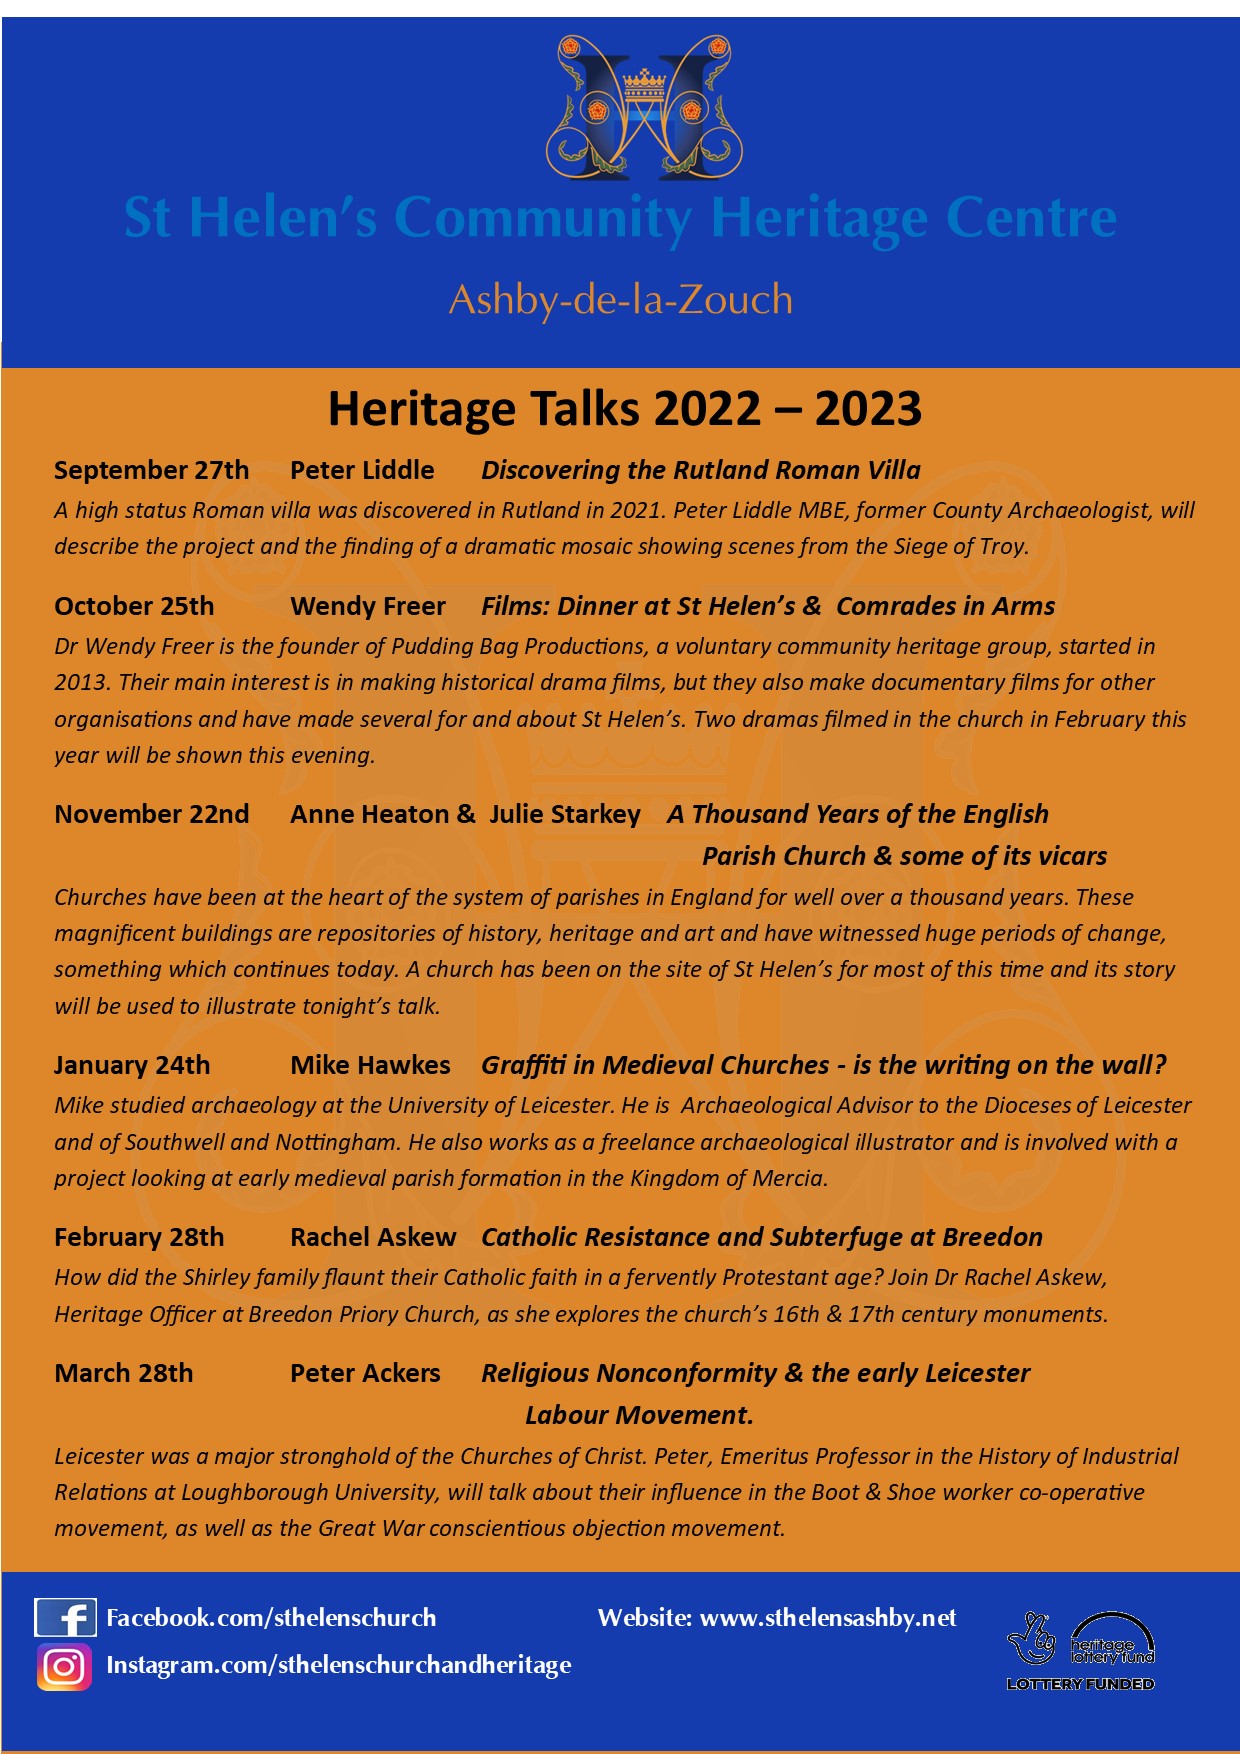 HeritageTalks-22-23-page2